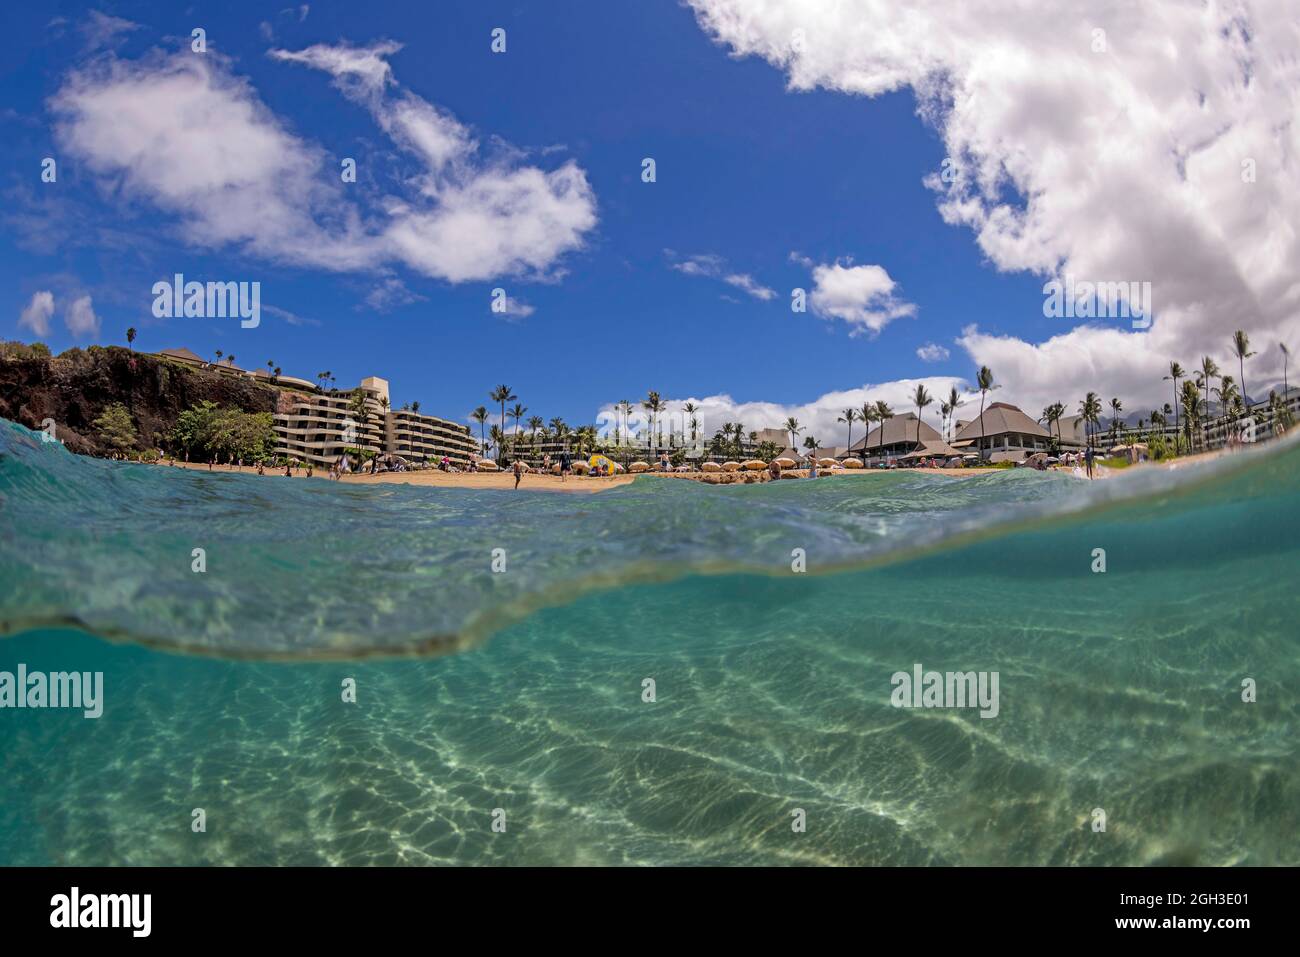 Ein Blick auf das nördliche Ende des weltberühmten Ka'anapali Beach und das Sheraton Hotel, Maui, Hawaii. Stockfoto